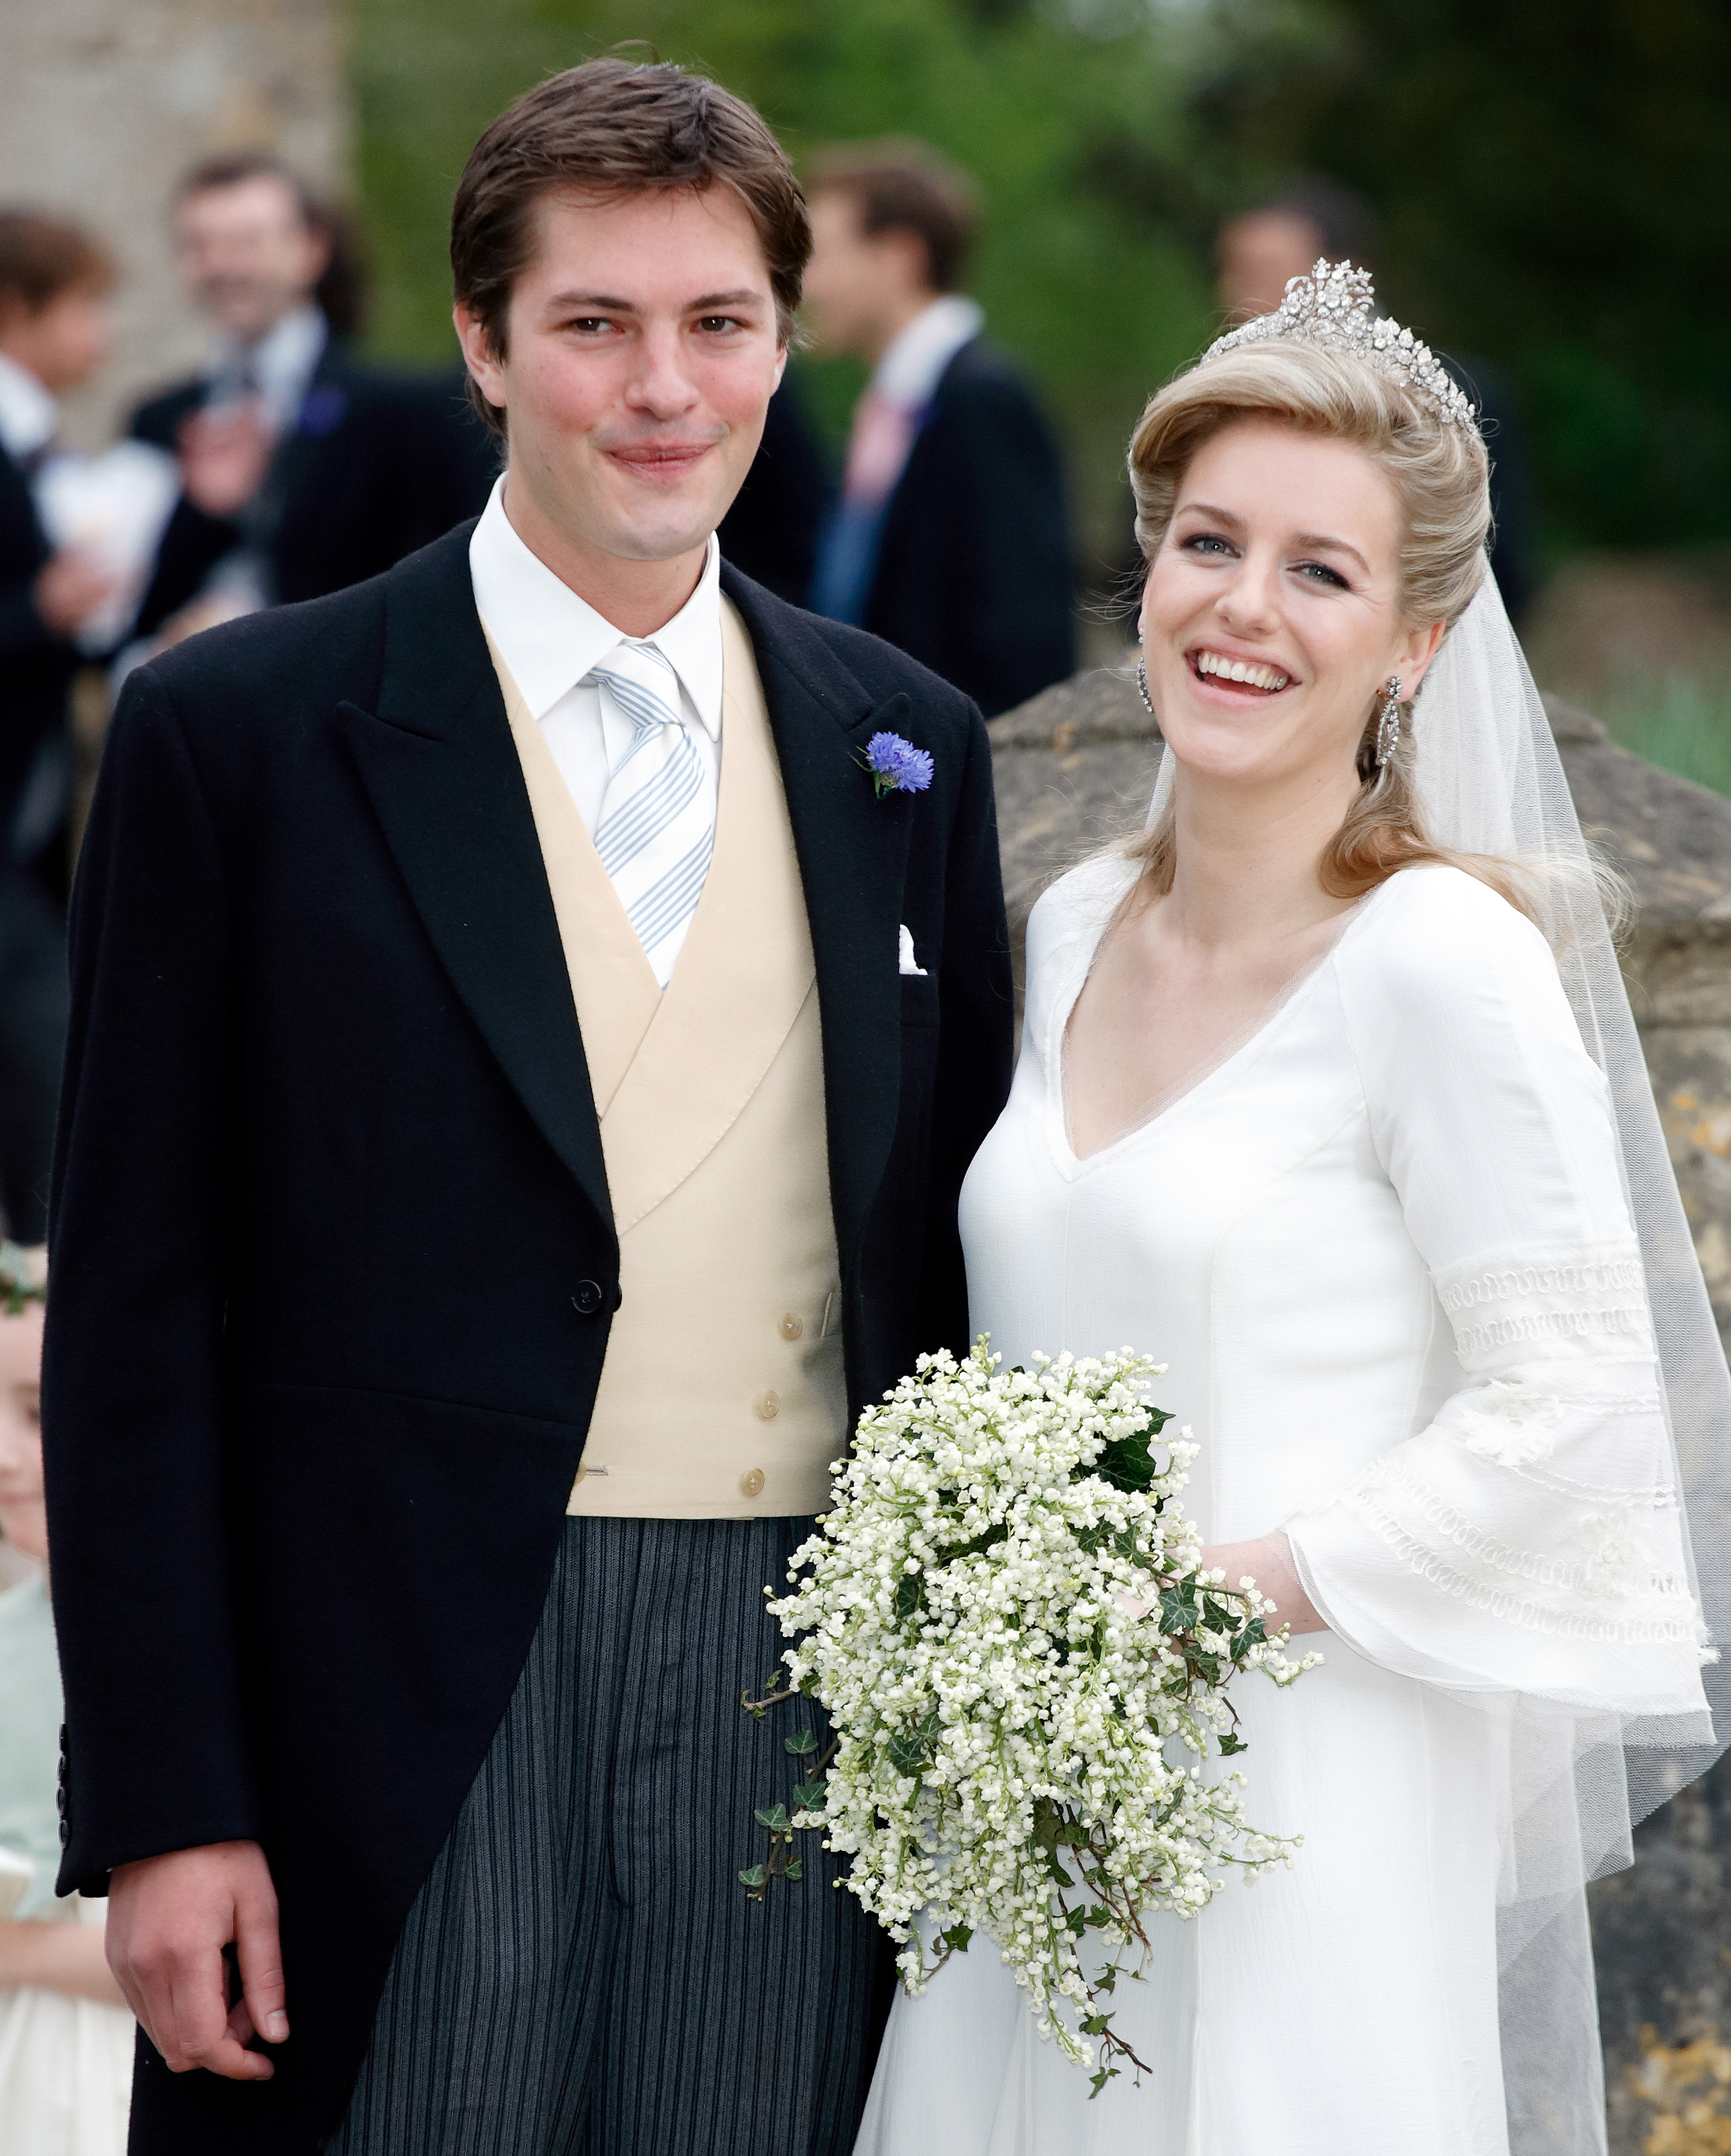 Harry Lopes et Laura Parker Bowles après leur mariage à l'église St Cyriac, le 6 mai 2006, à Lacock, en Angleterre. | Source : Getty Images